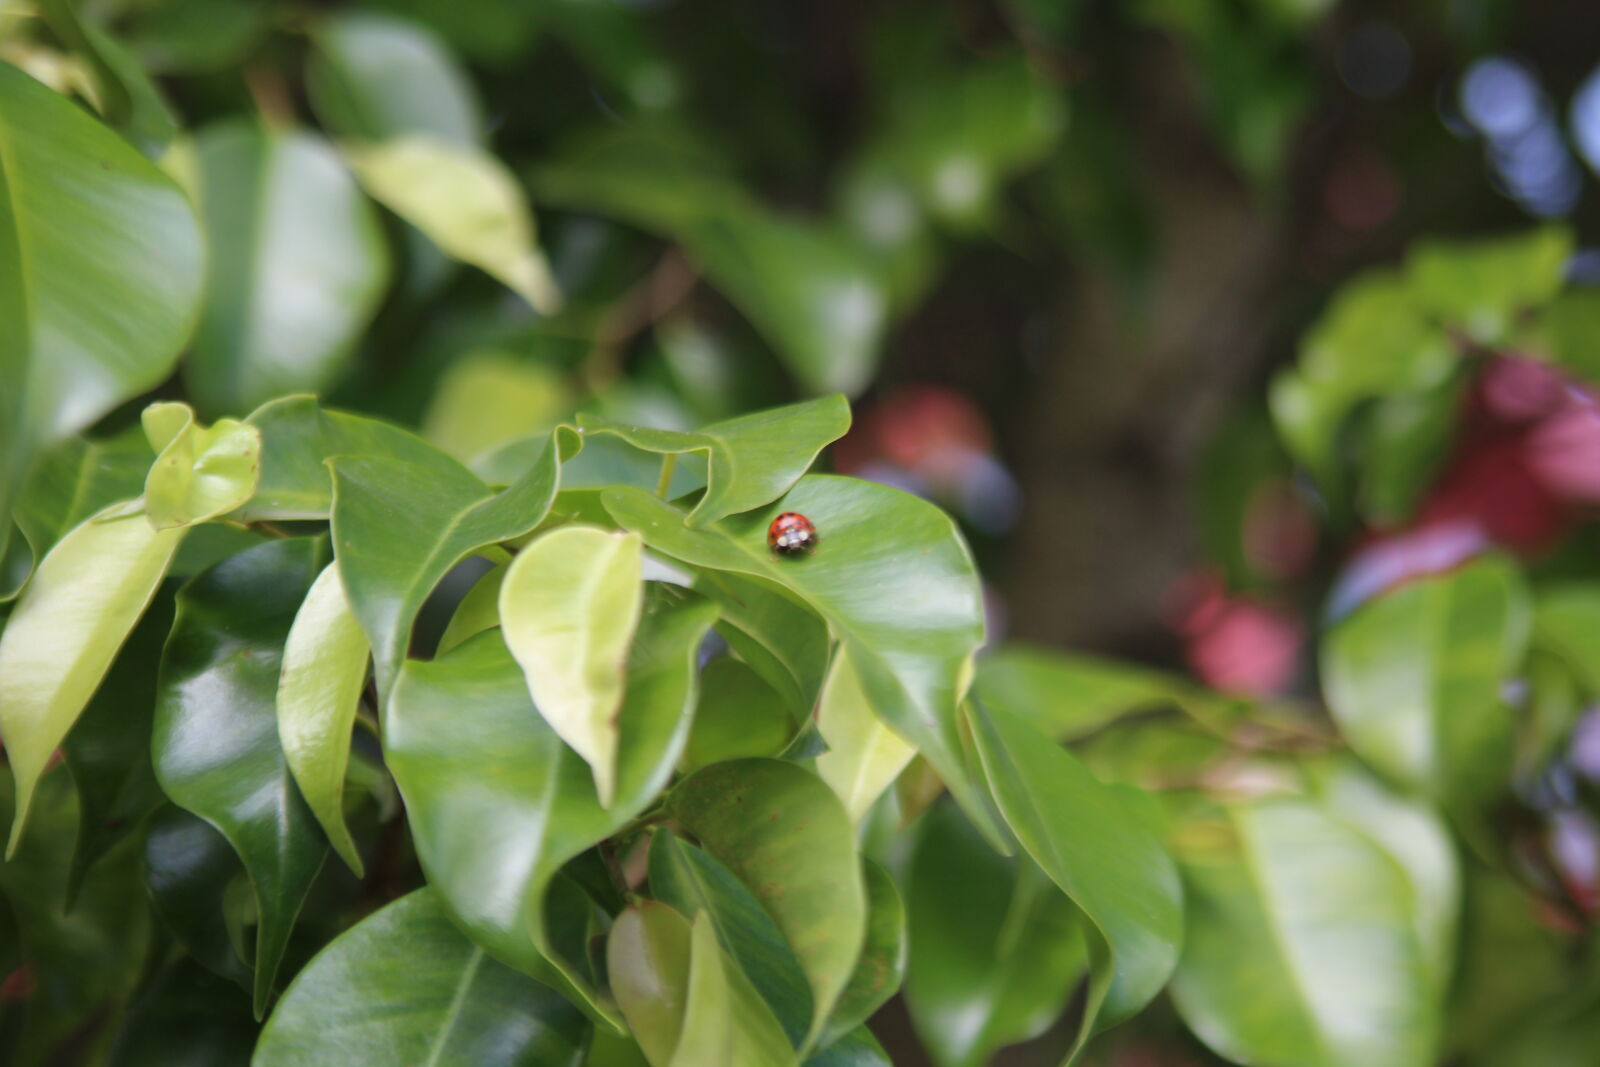 Canon EF 28-105mm F4.0-5.6 USM sample photo. Ladybug, leaves, nature, photography photography